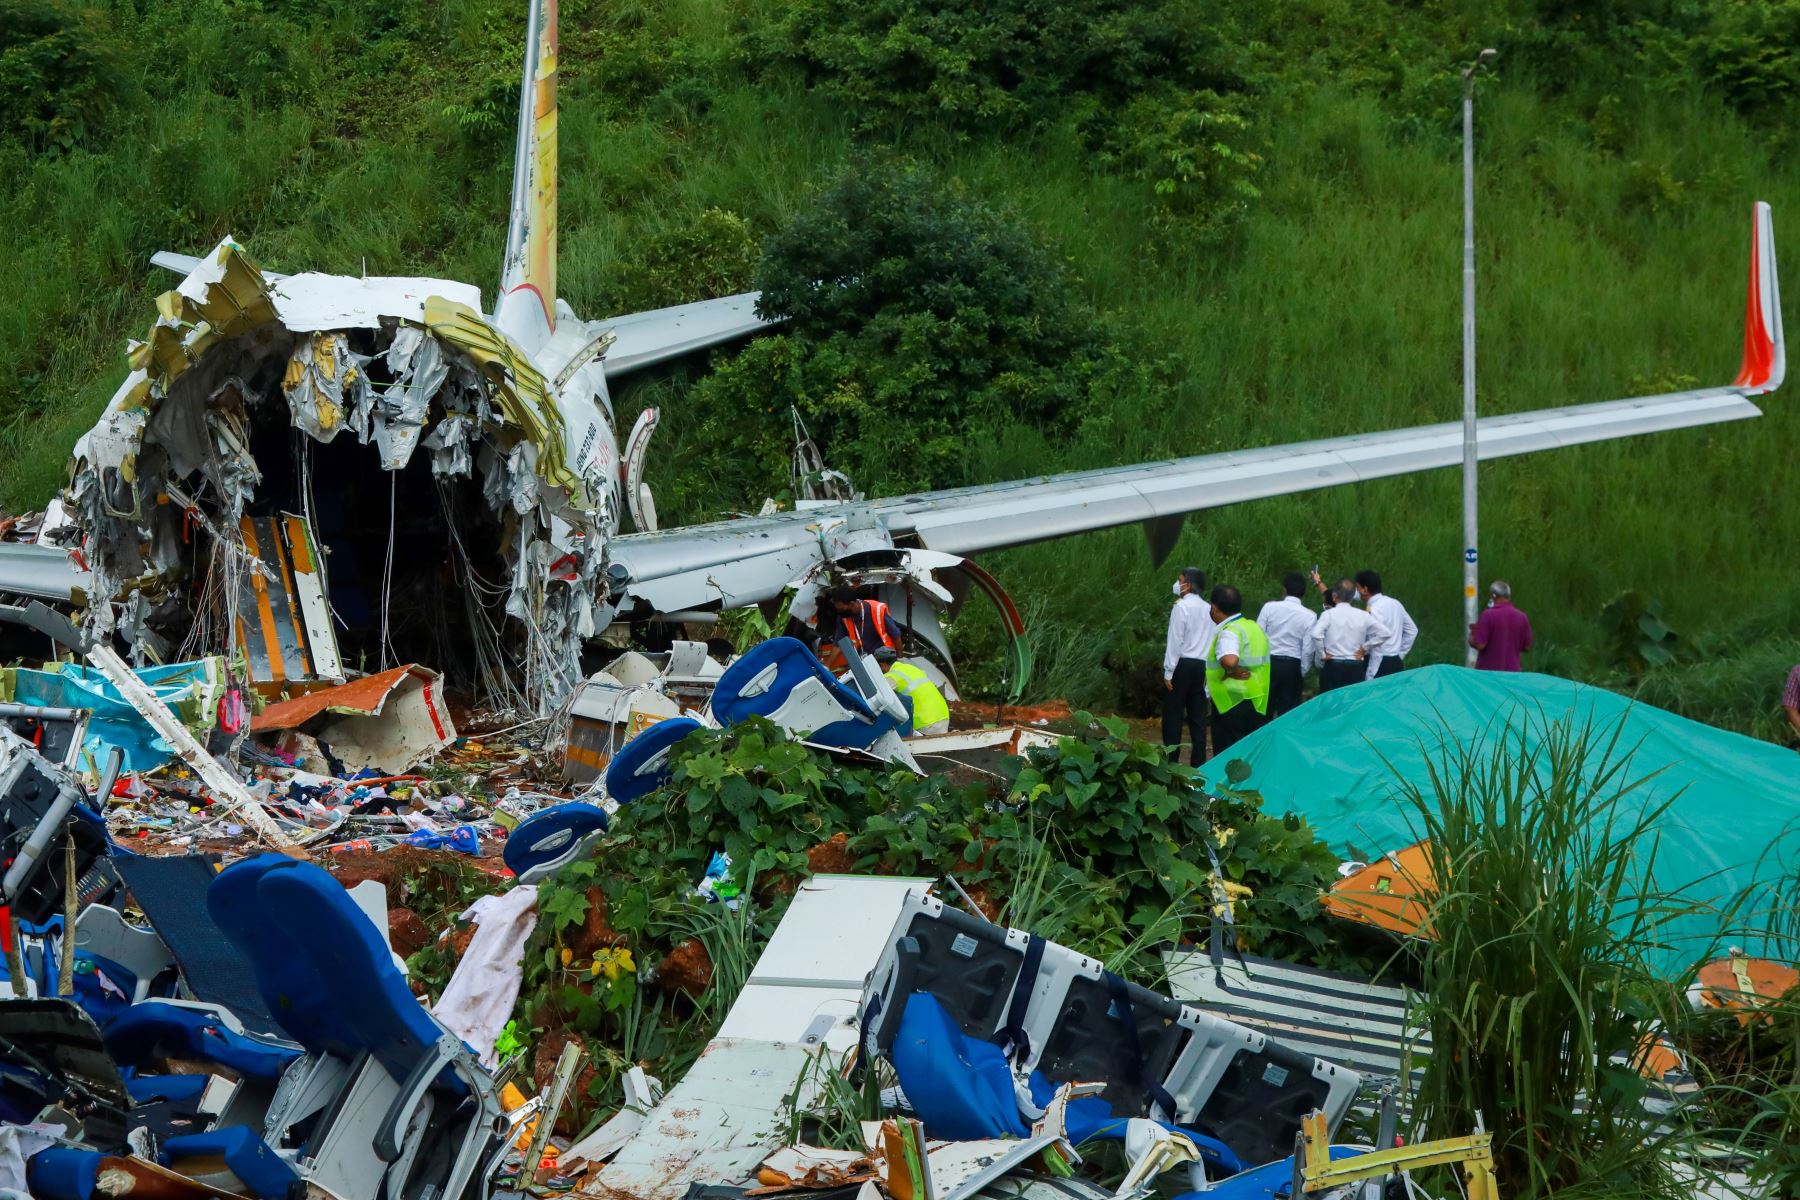 Las autoridades inspeccionan los restos del avión de Air India Express tras accidente en estado de Kerala. Foto: AFP